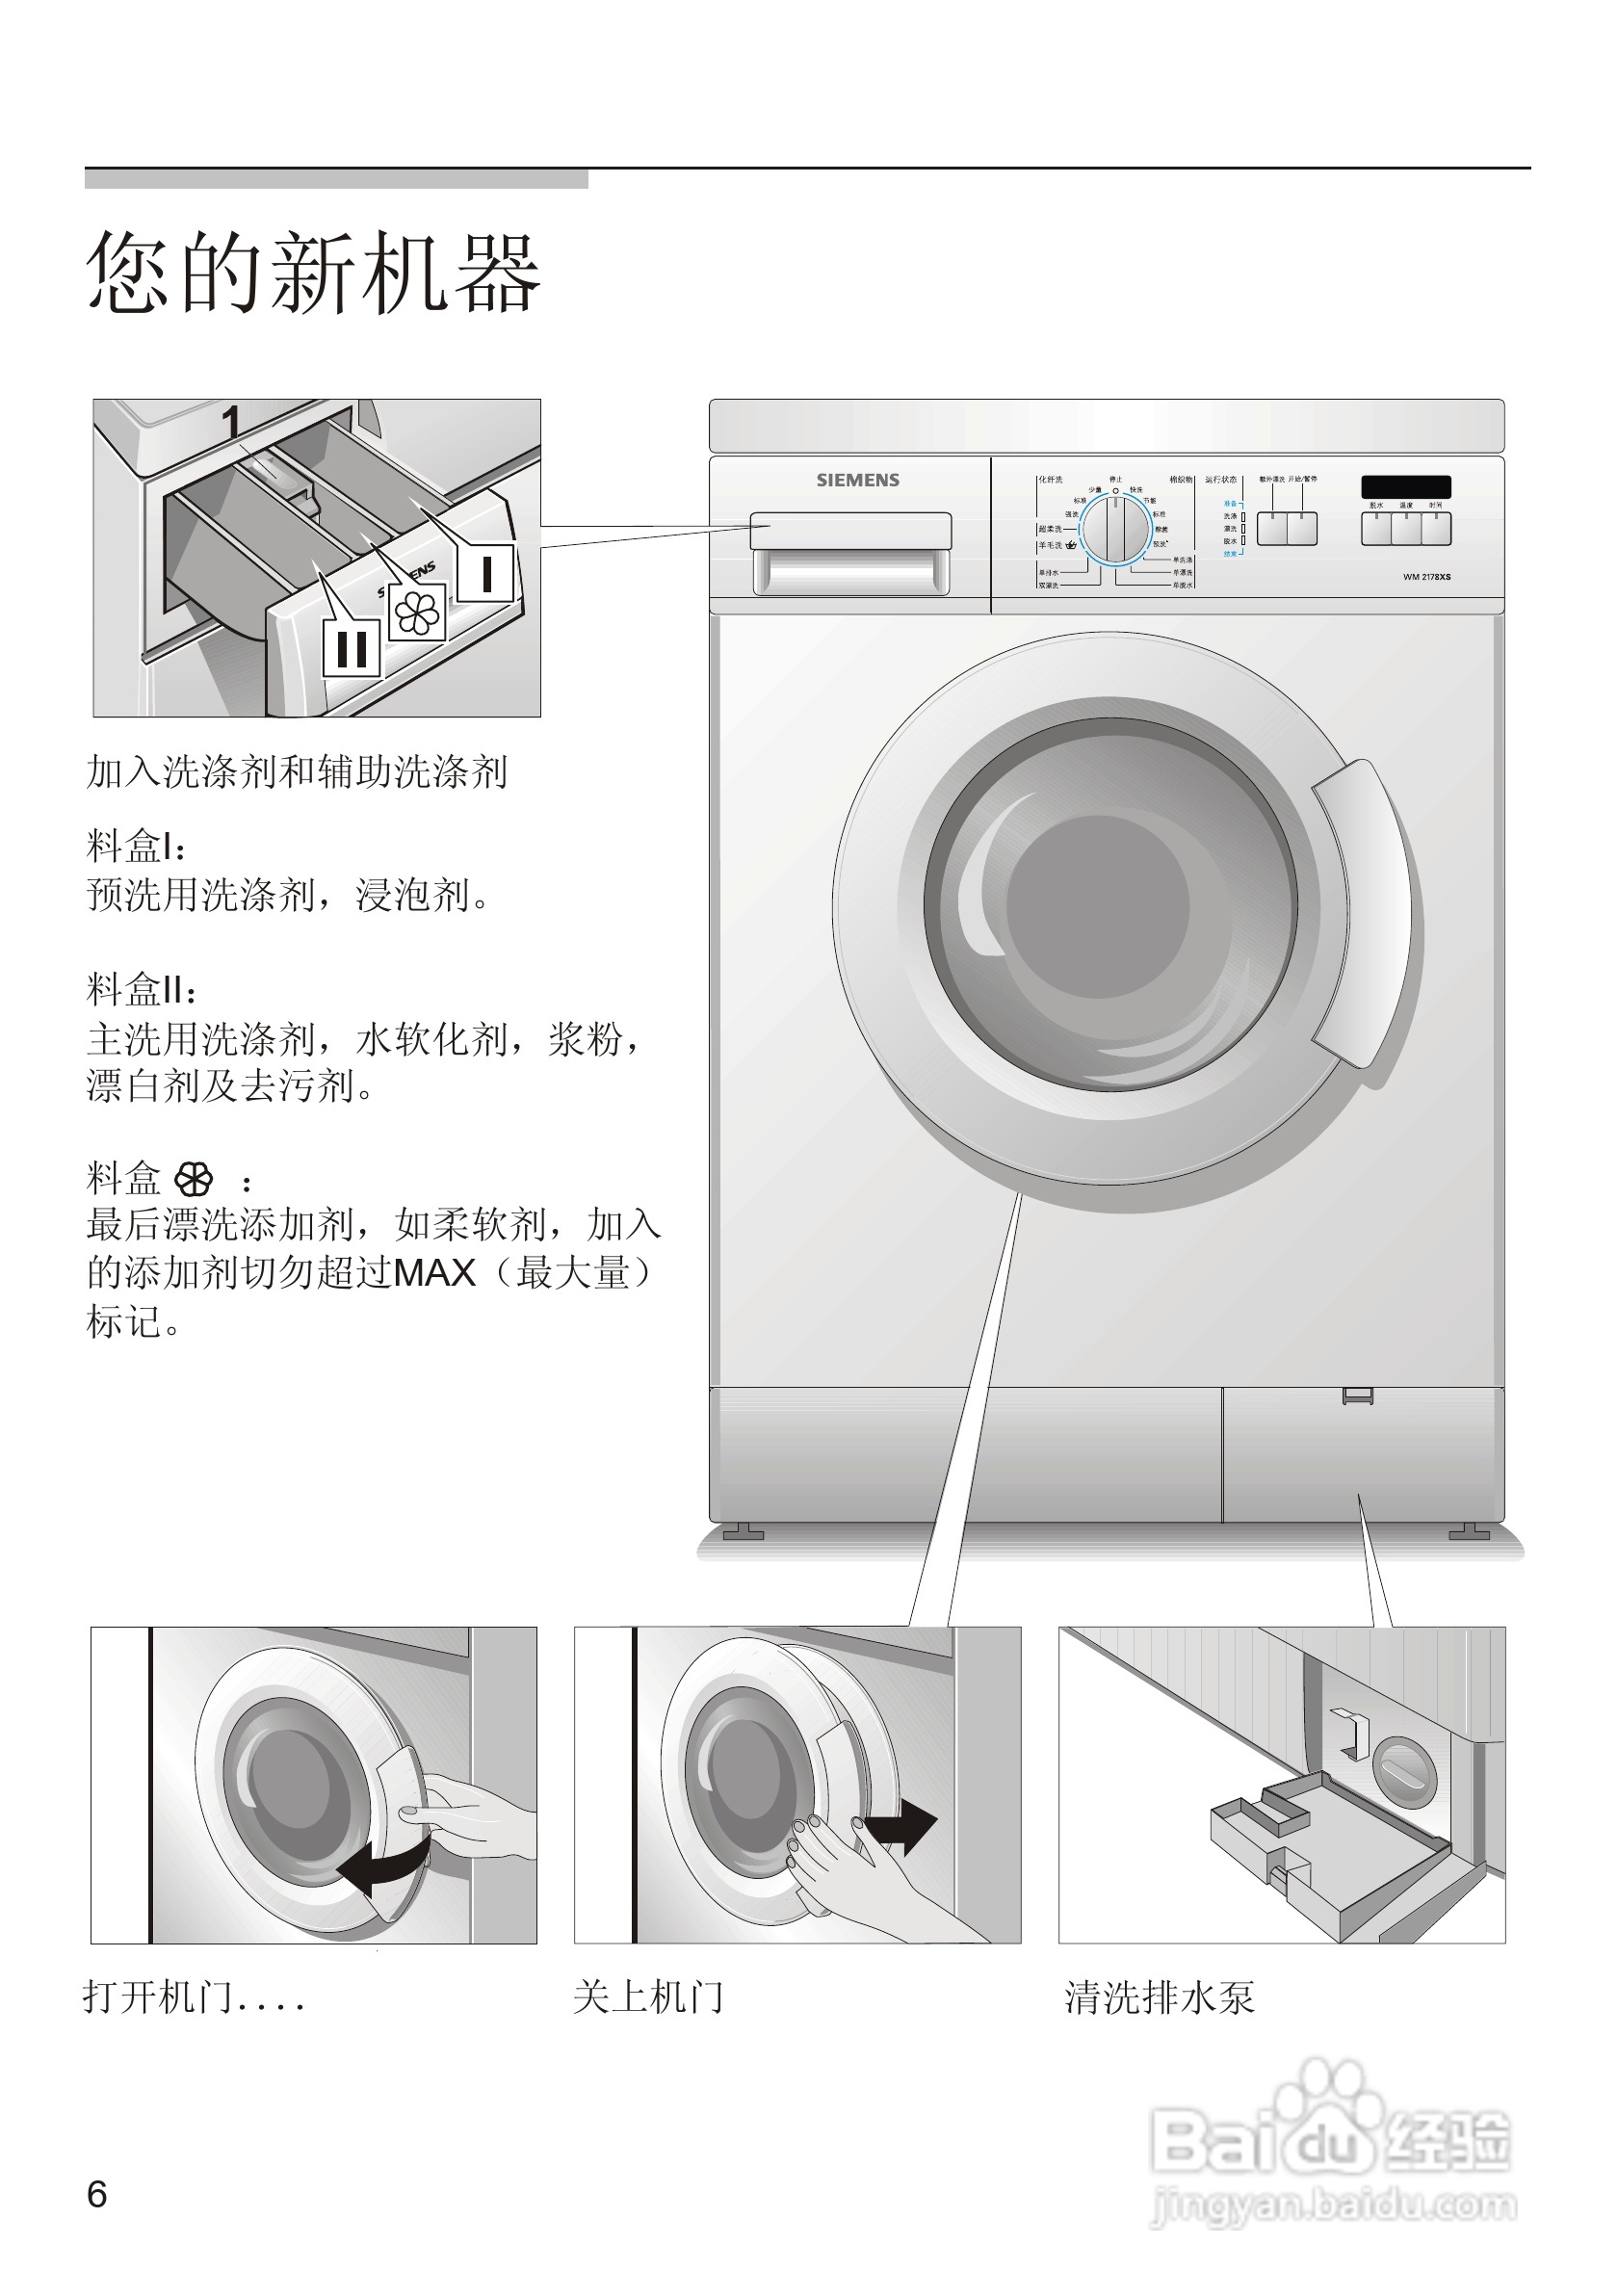 西门子洗衣机图案意思图片